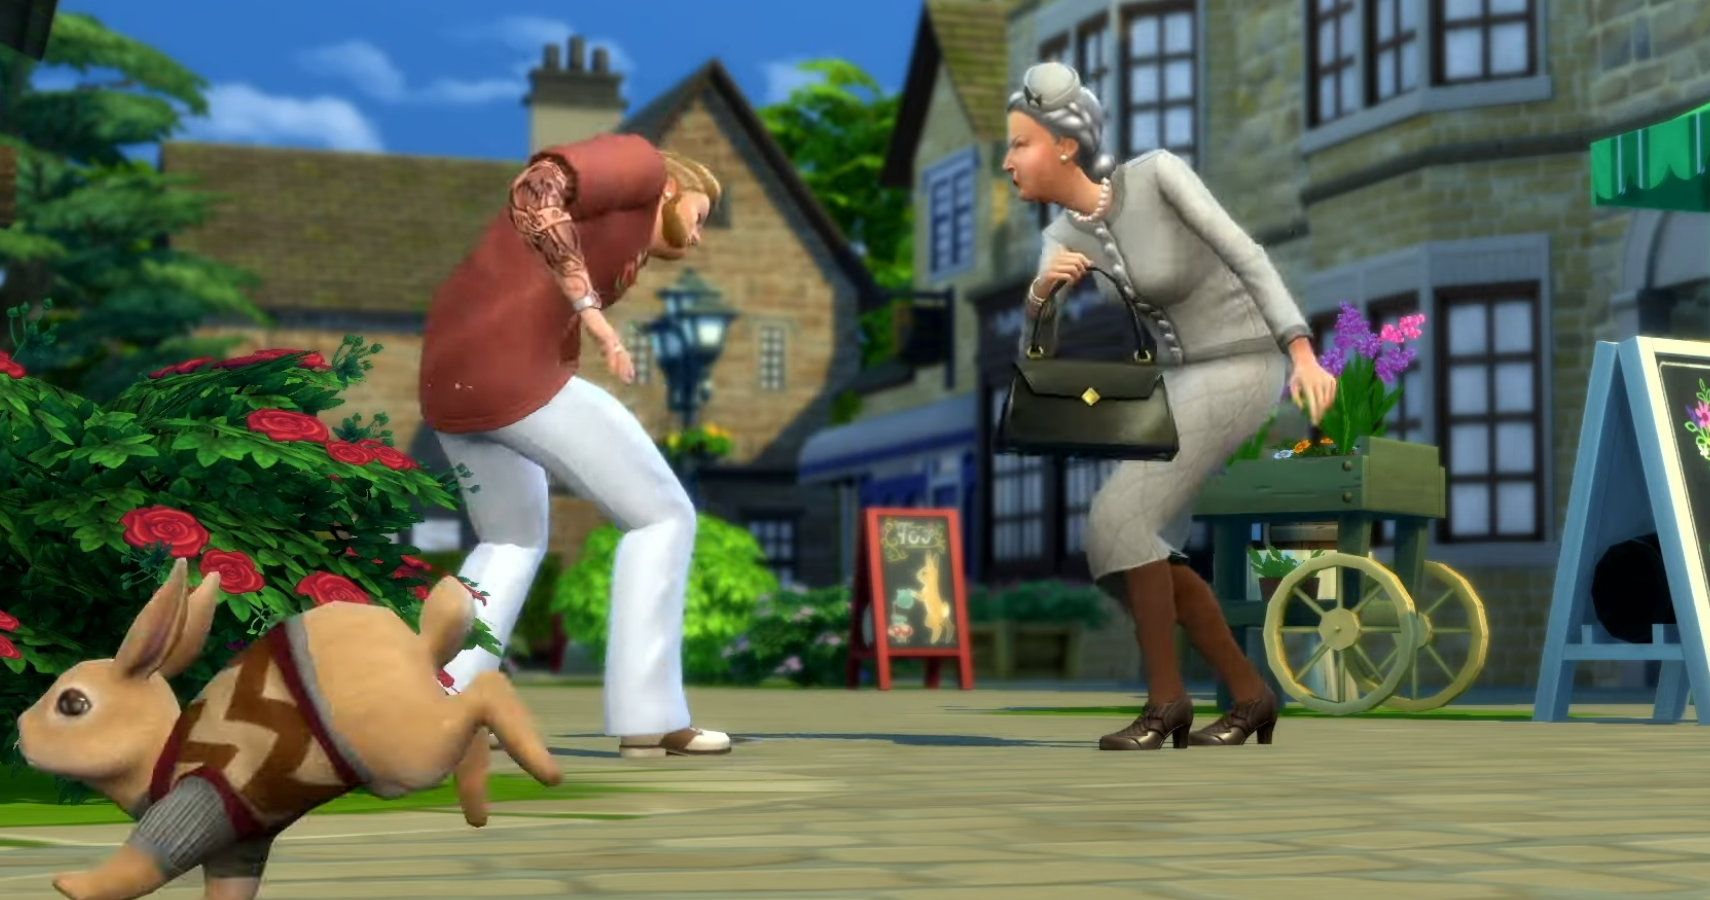 Agnes hitting a sim with her handbag